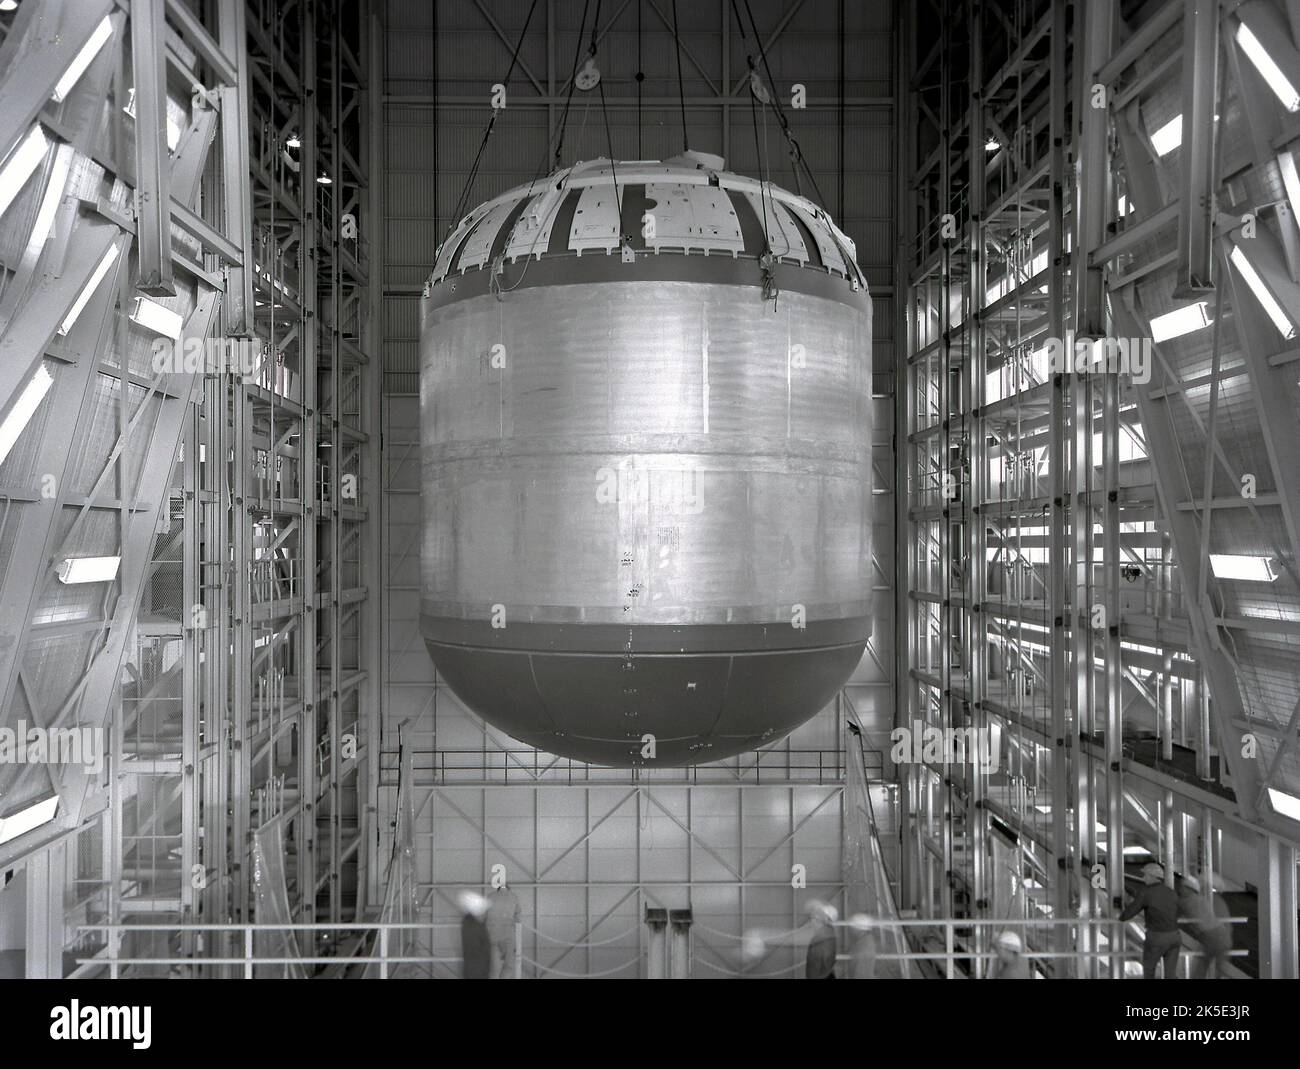 Spazio Race alla luna. I test idrostatici del Saturn V S-IC - il primo stadio di prova del serbatoio del combustibile - sono stati condotti con successo al Marshall Space Flight Center della NASA. Lo stadio S-IC era alimentato da cinque motori F-1, che utilizzavano ossigeno liquido e cherosene come propellenti. Una volta completamente assemblato, lo stadio S-IC Saturn V era alto 138 piedi, con un diametro di 33 piedi e in grado di erogare 7,5 milioni di libbre di spinta dai suoi cinque motori. Immagine della NASA / credito: NASA Foto Stock